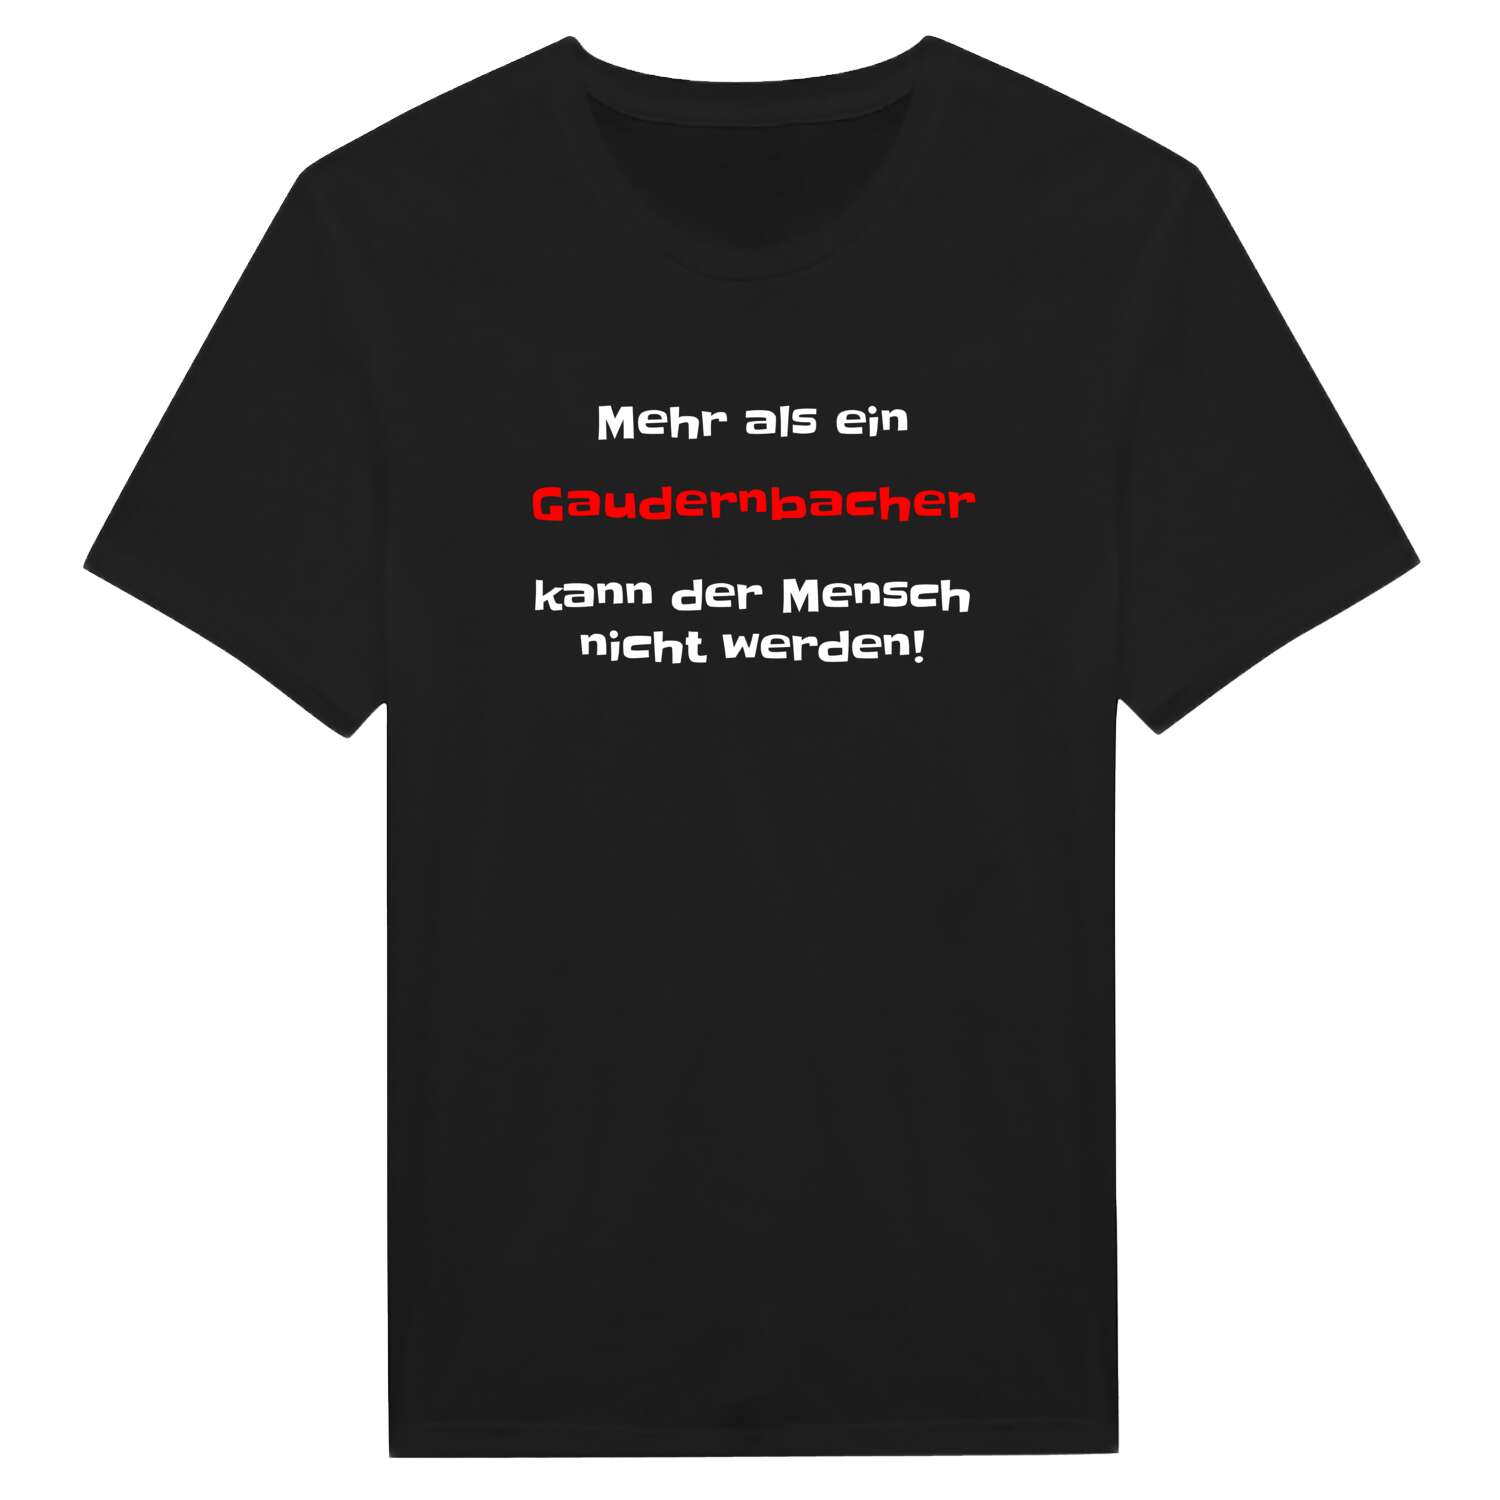 Gaudernbach T-Shirt »Mehr als ein«